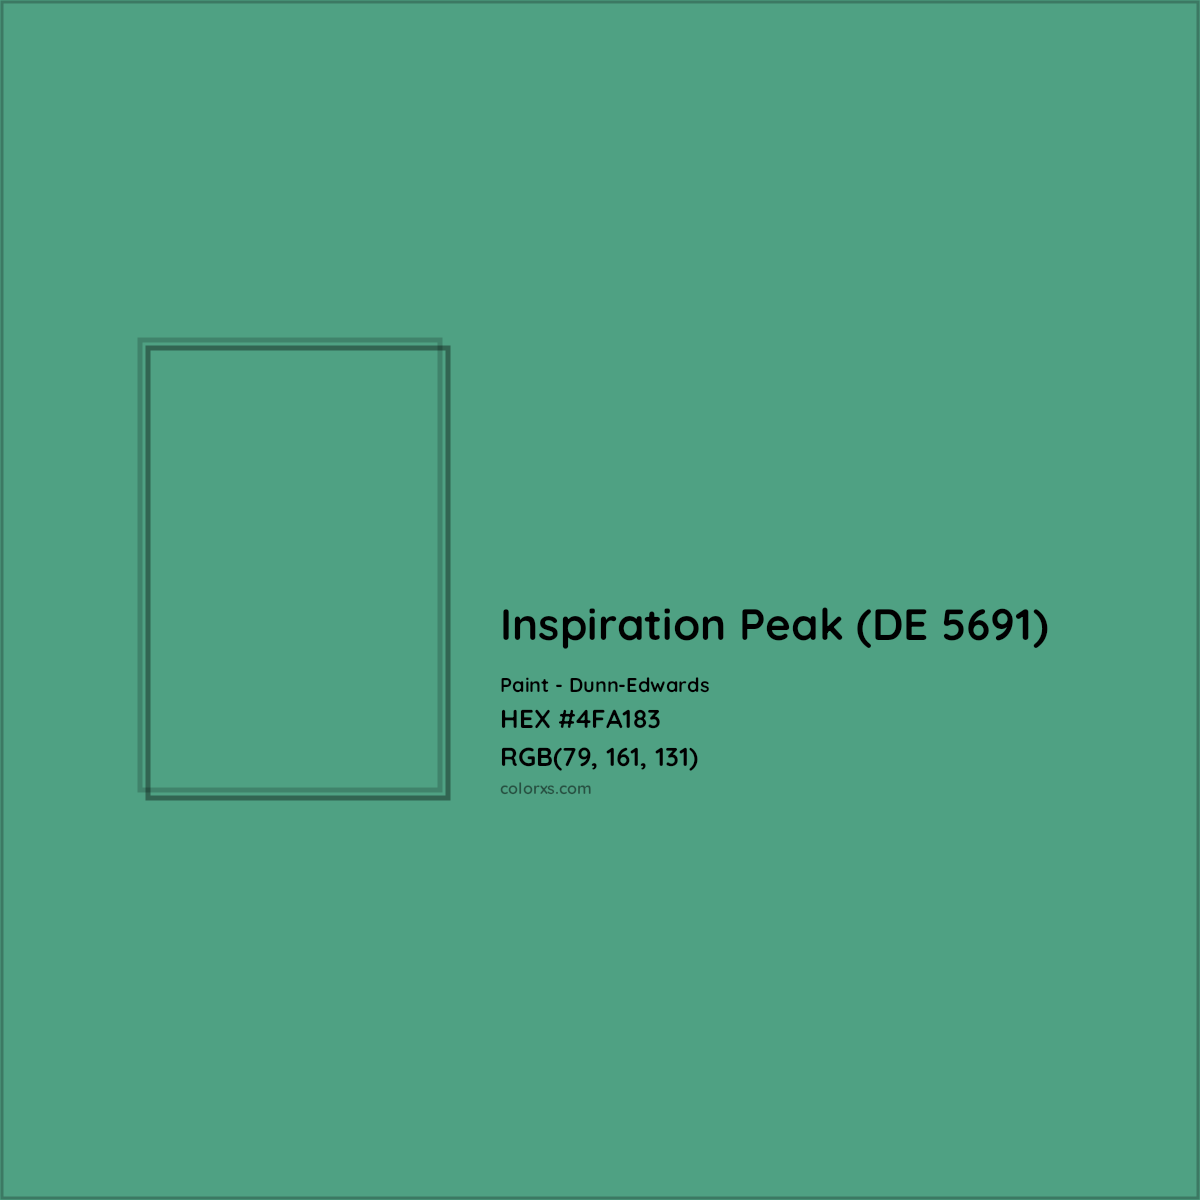 HEX #4FA183 Inspiration Peak (DE 5691) Paint Dunn-Edwards - Color Code